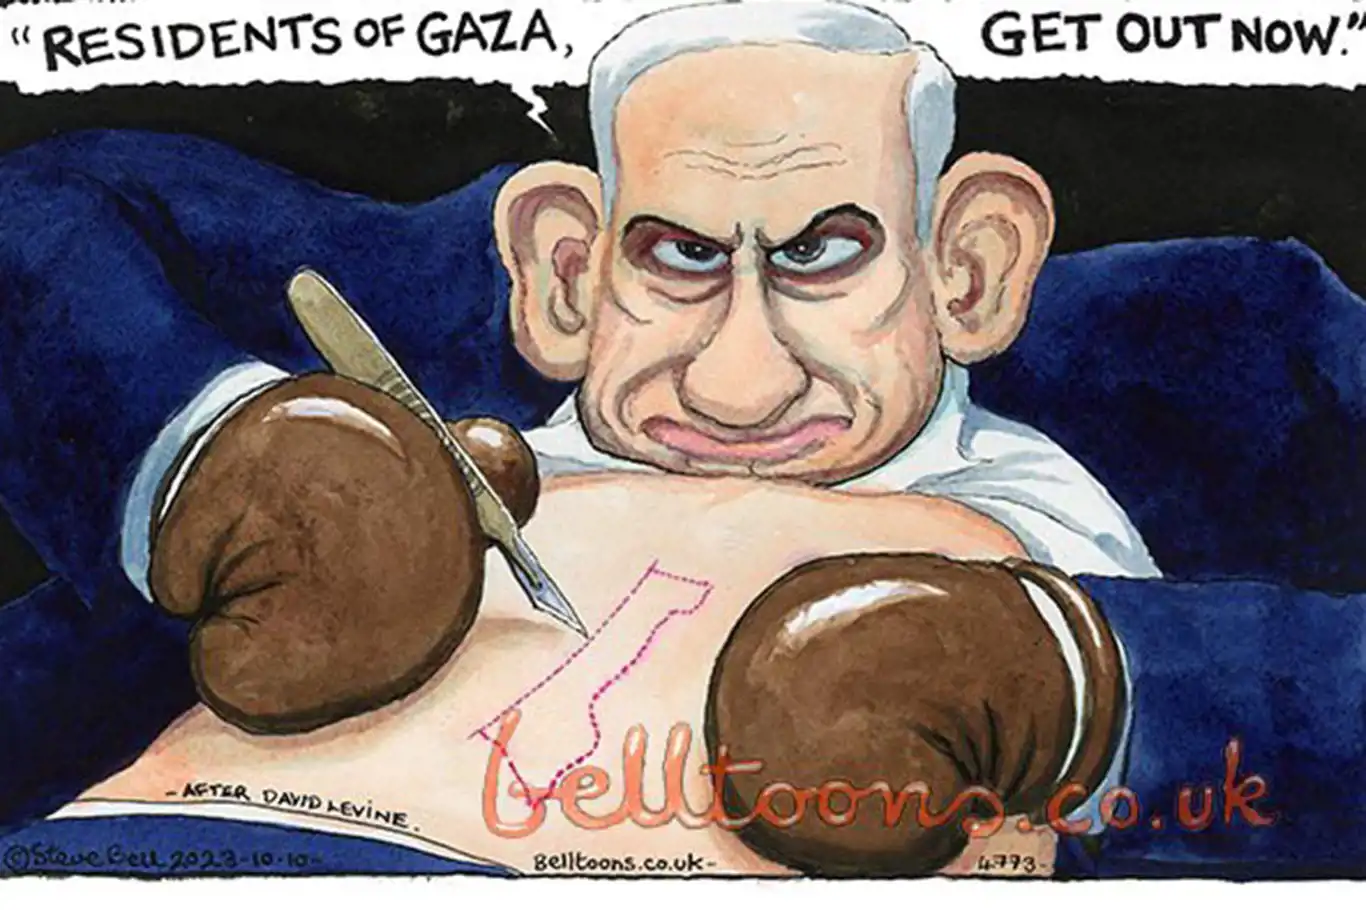 İşgalci Netanyahu'yu çizdi diye 40 yıldır çalıştığı gazeteden kovuldu